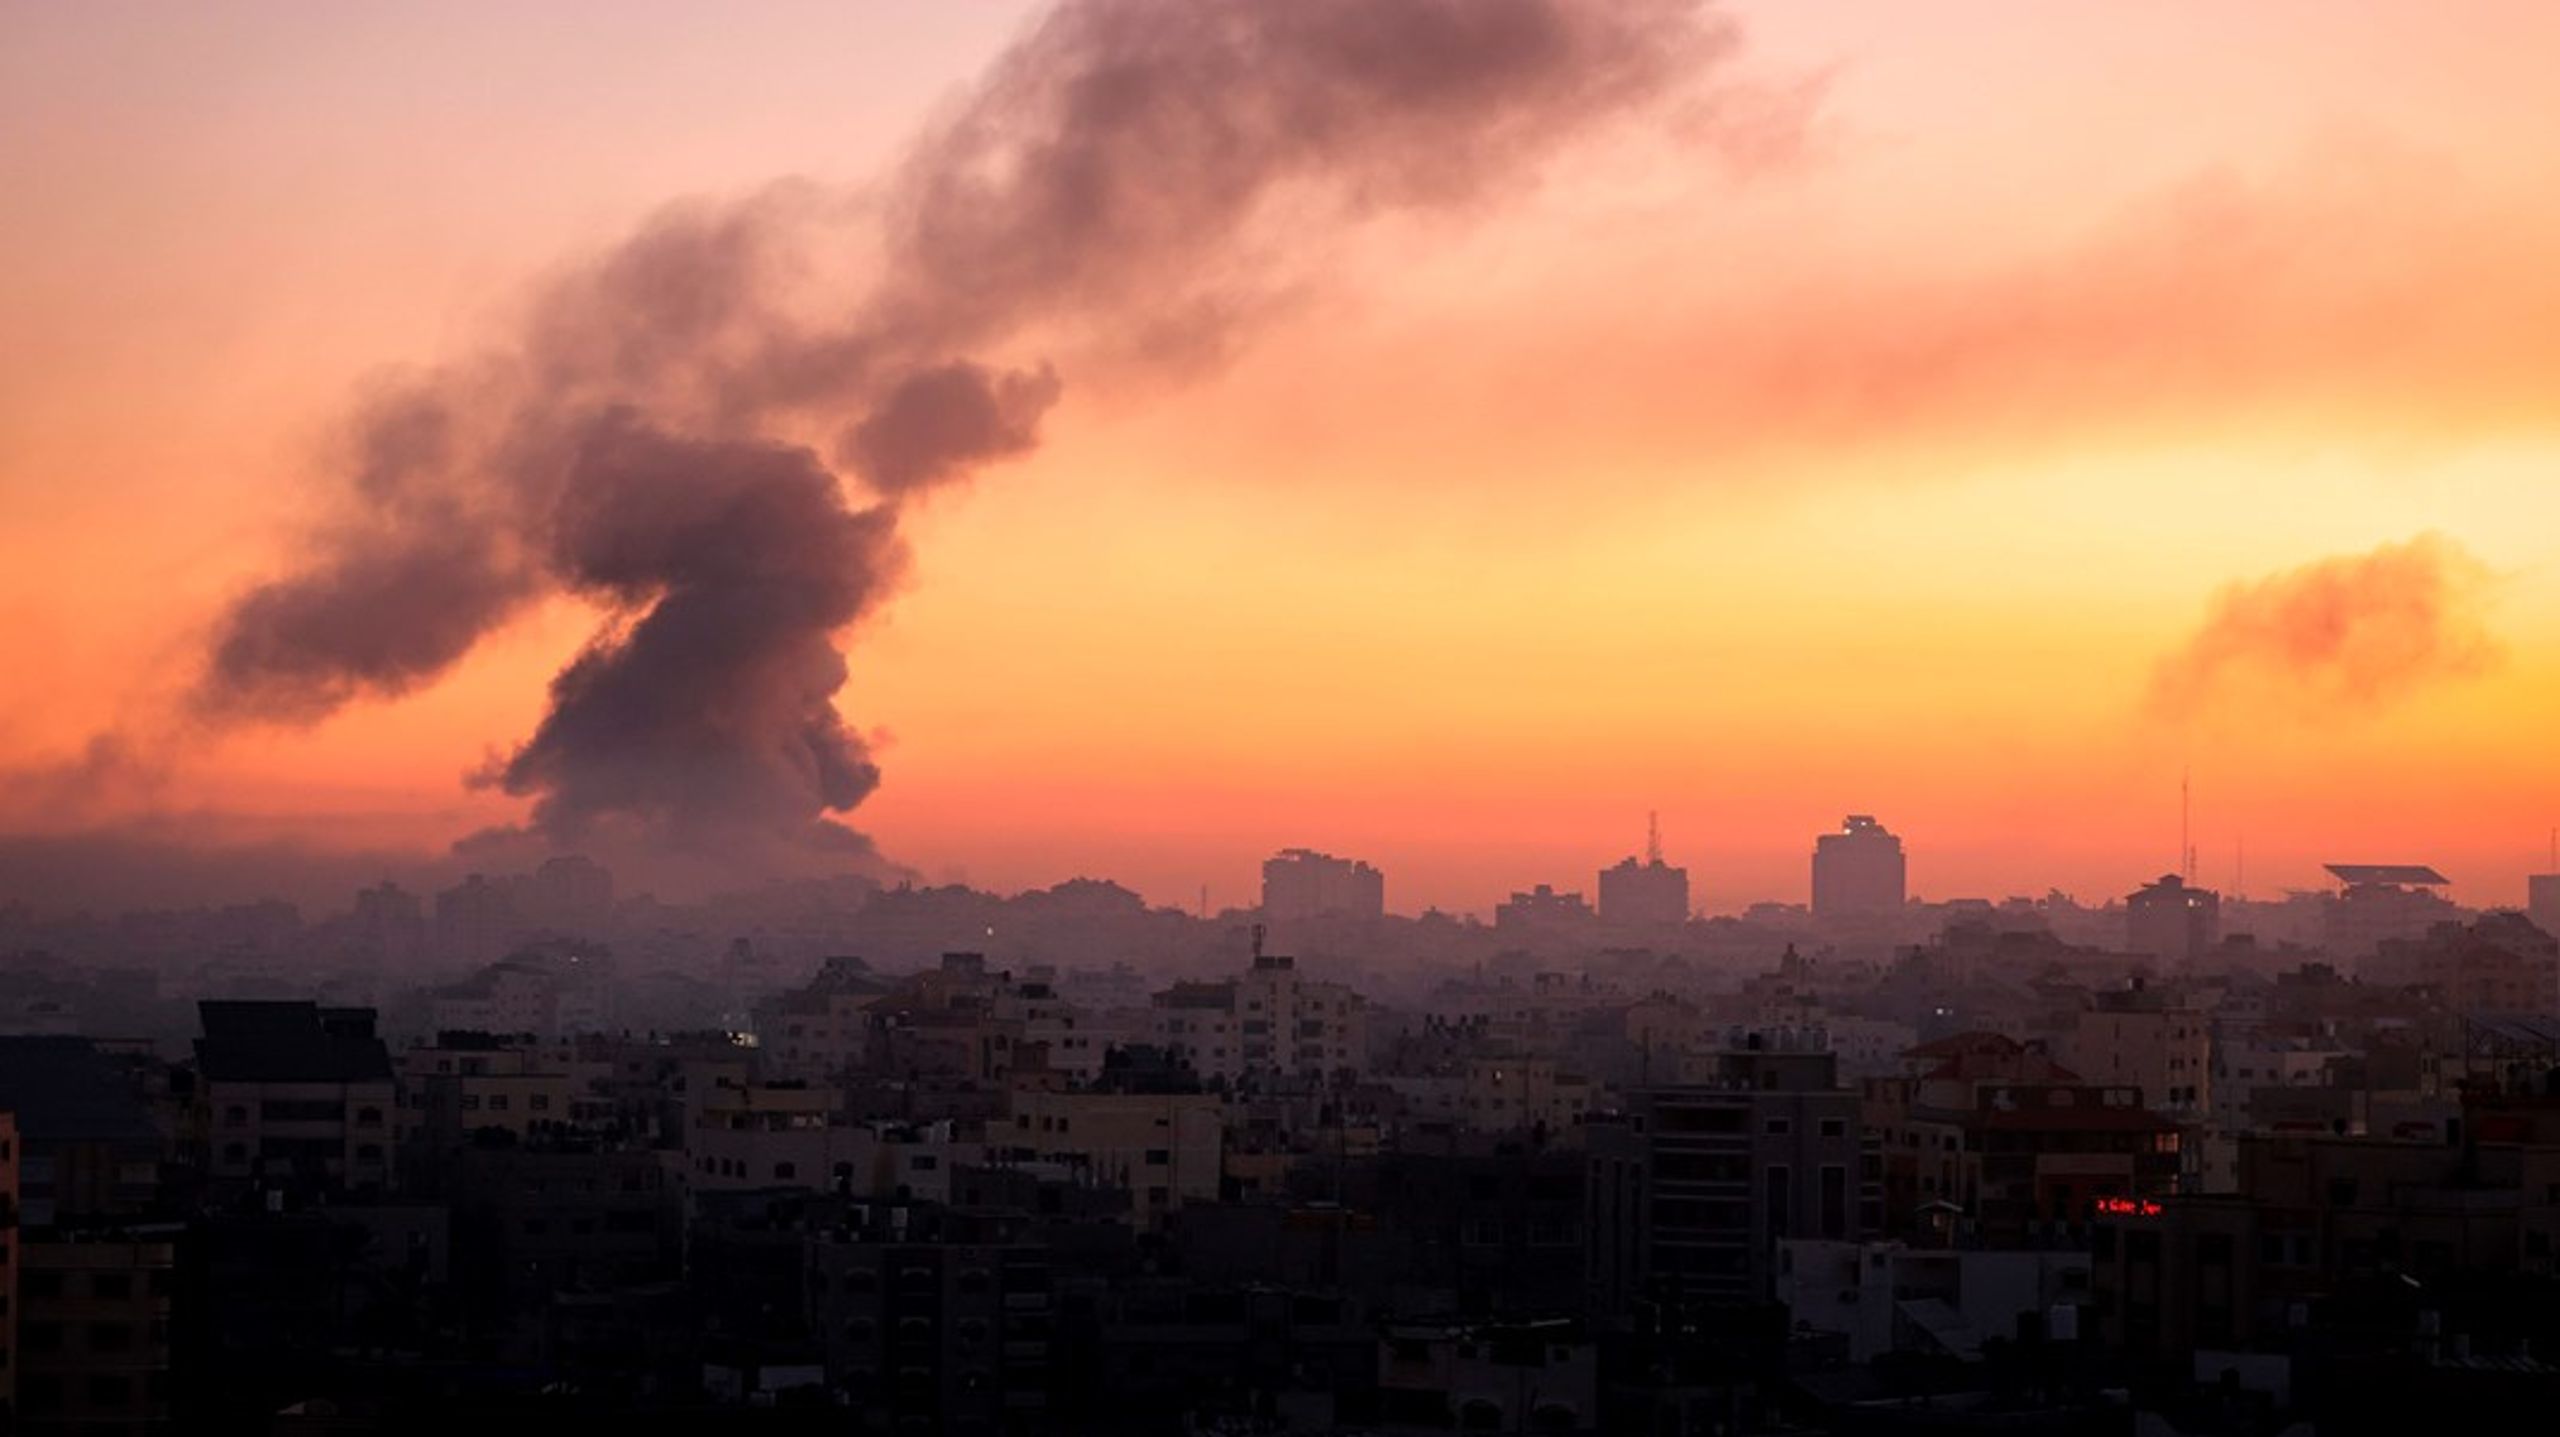 Det er endnu uvist, om den krig, Israel skal udkæmpe nu, kan begrænses til Gaza, eller om vi vil se en storkrig i Mellemøsten. Det scenarie er helt åbent og vil blive bestemmende for meget andet, skriver Jacob Kaarsbo. Fotoet er fra Gaza 13. oktober.